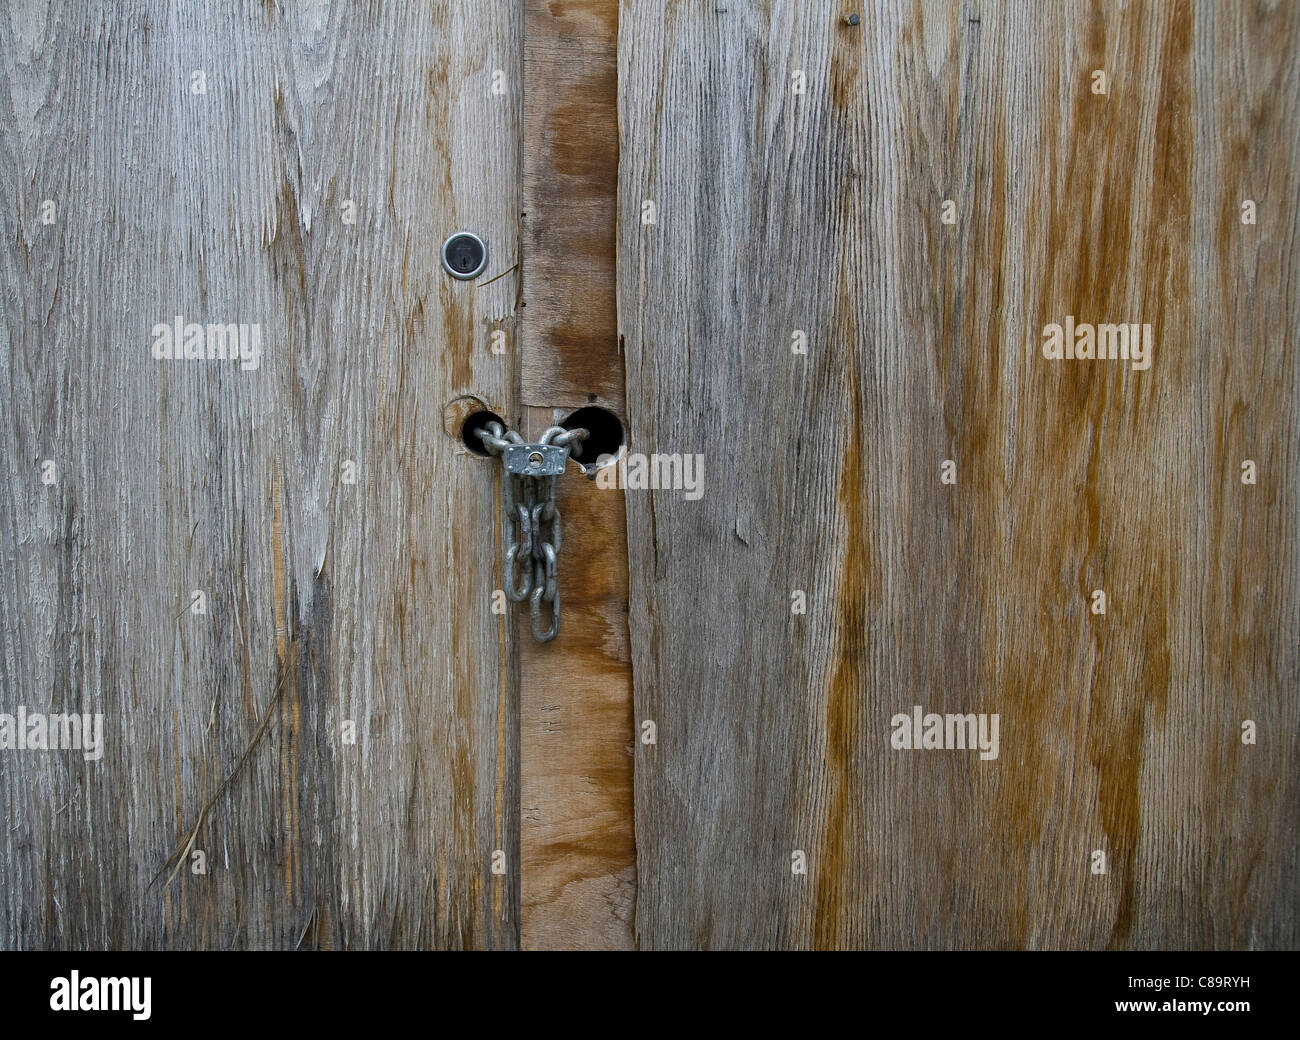 Allemagne, Vechelde, près des portes de bois avec cadenas Banque D'Images